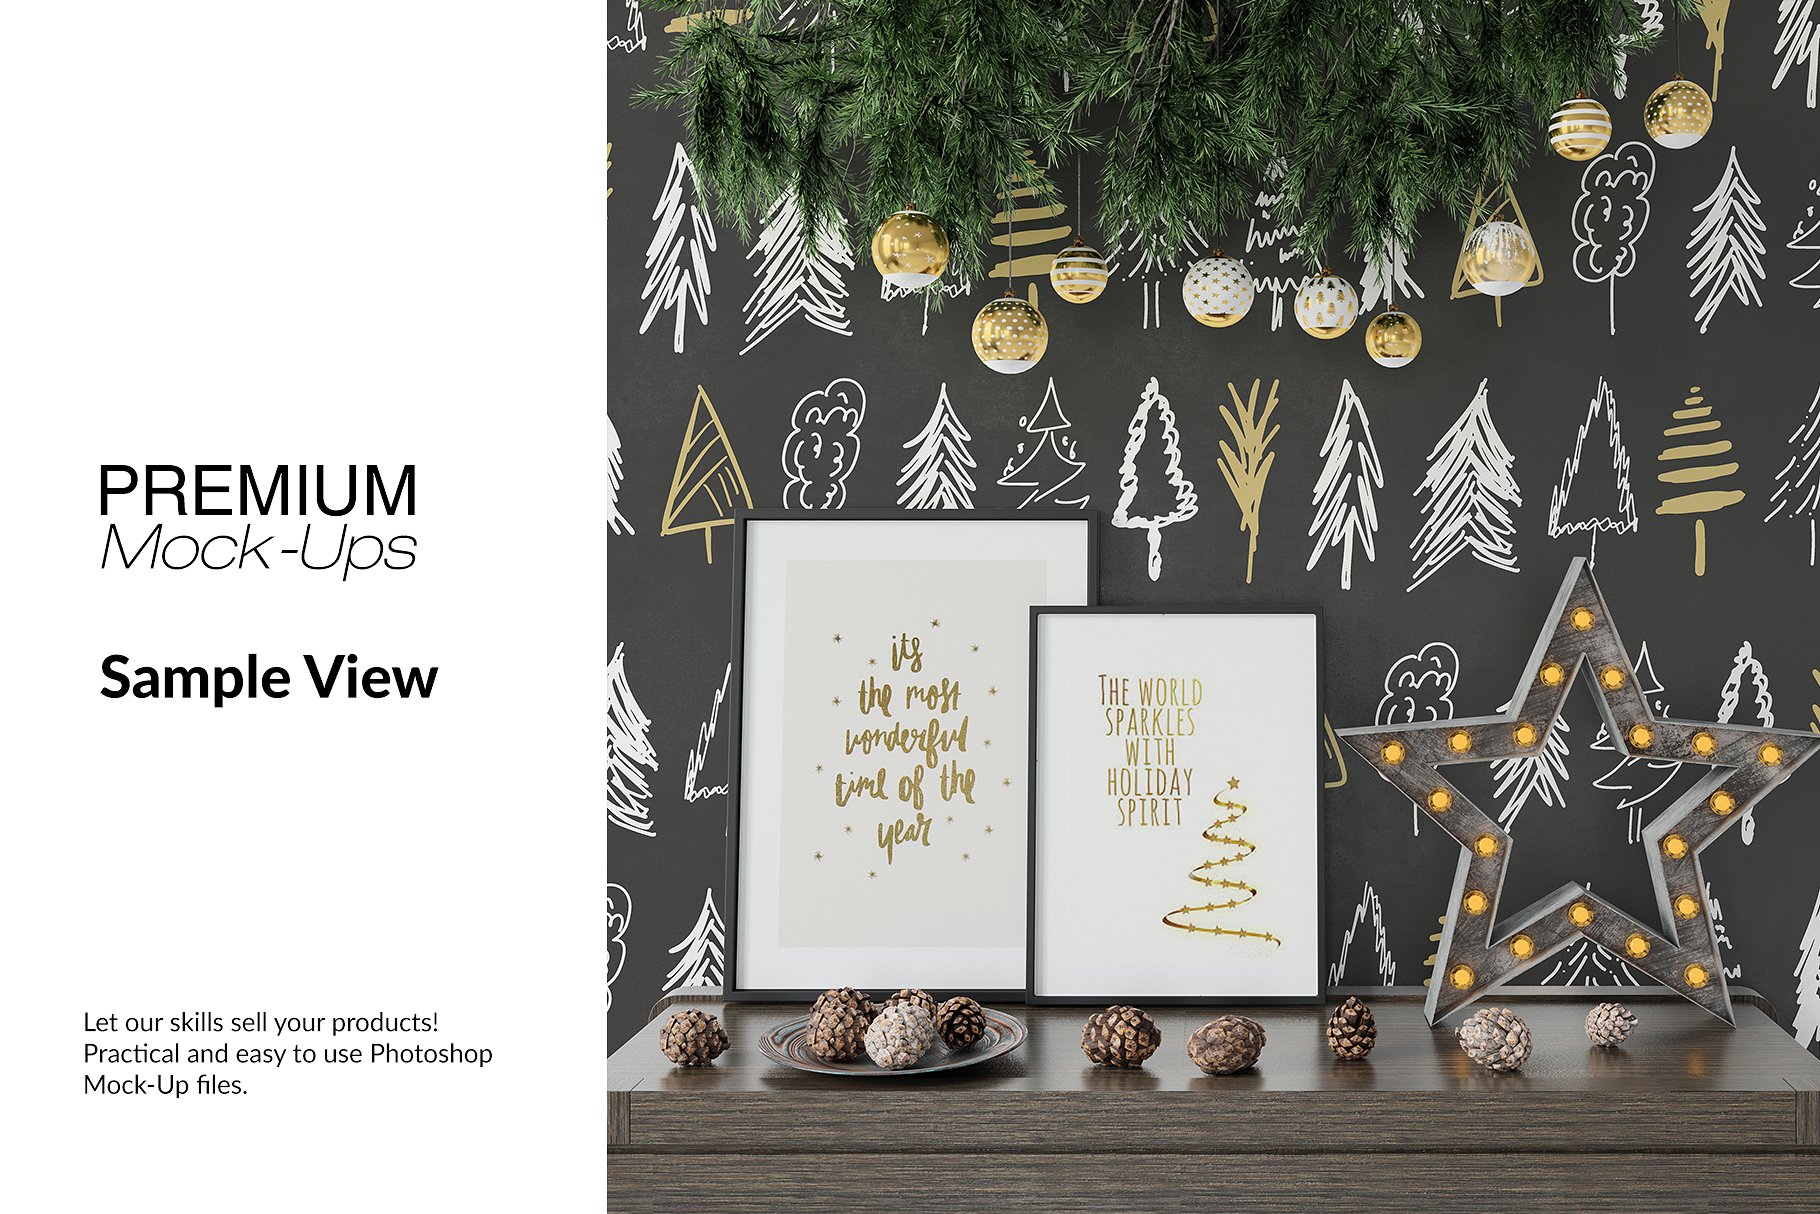 高品质的圣诞节画框框架和墙壁装饰展示样机 Christmas Frames & Wall Set [psd,jpg]插图(9)